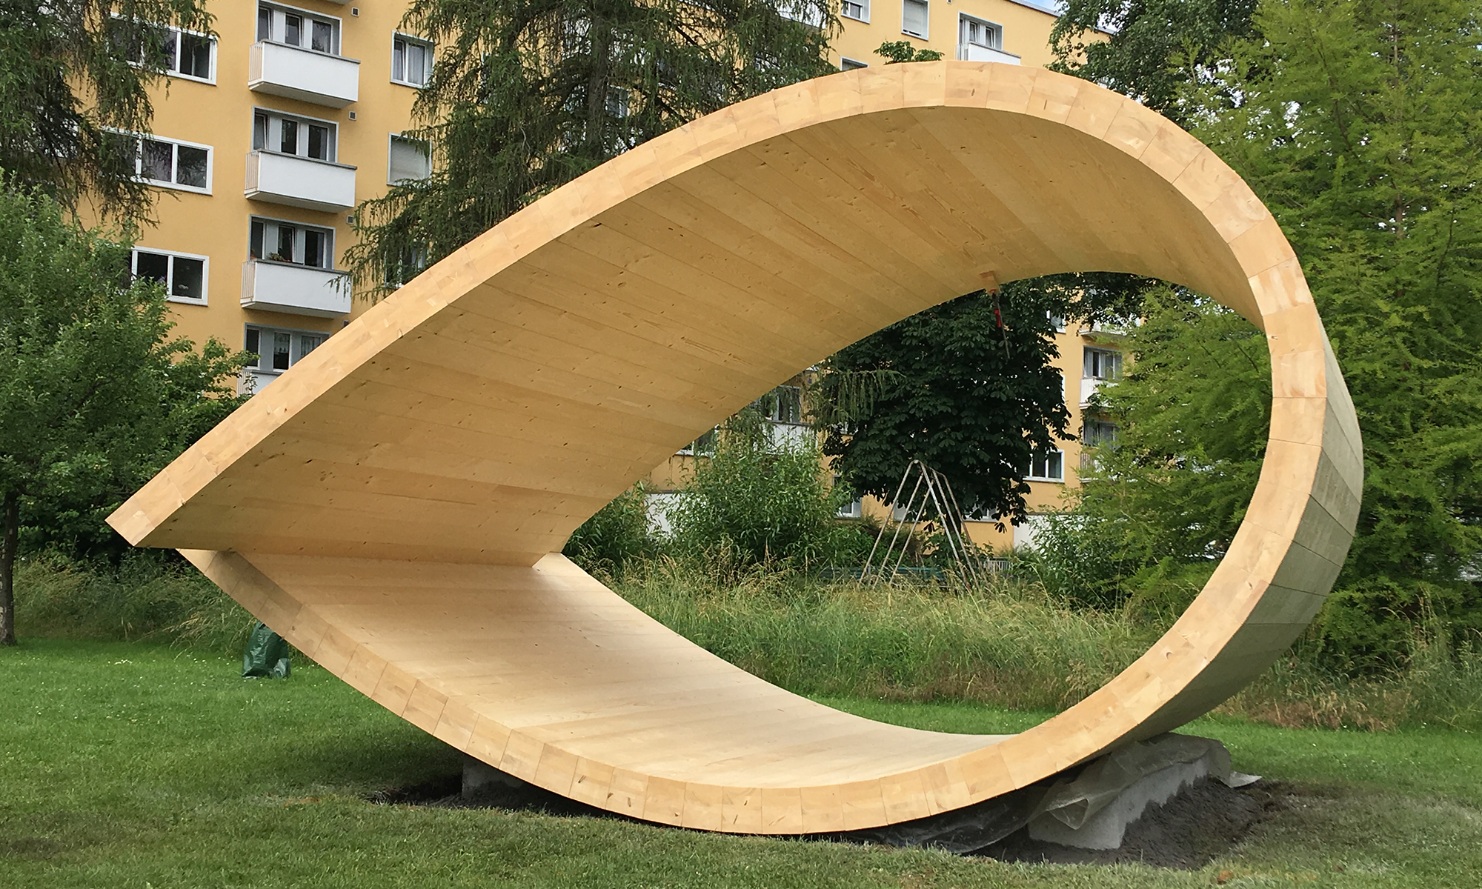 Le pavillon sonore est une sculpture en forme de boucle en bois. Il est situé dans un parc à Zurich.